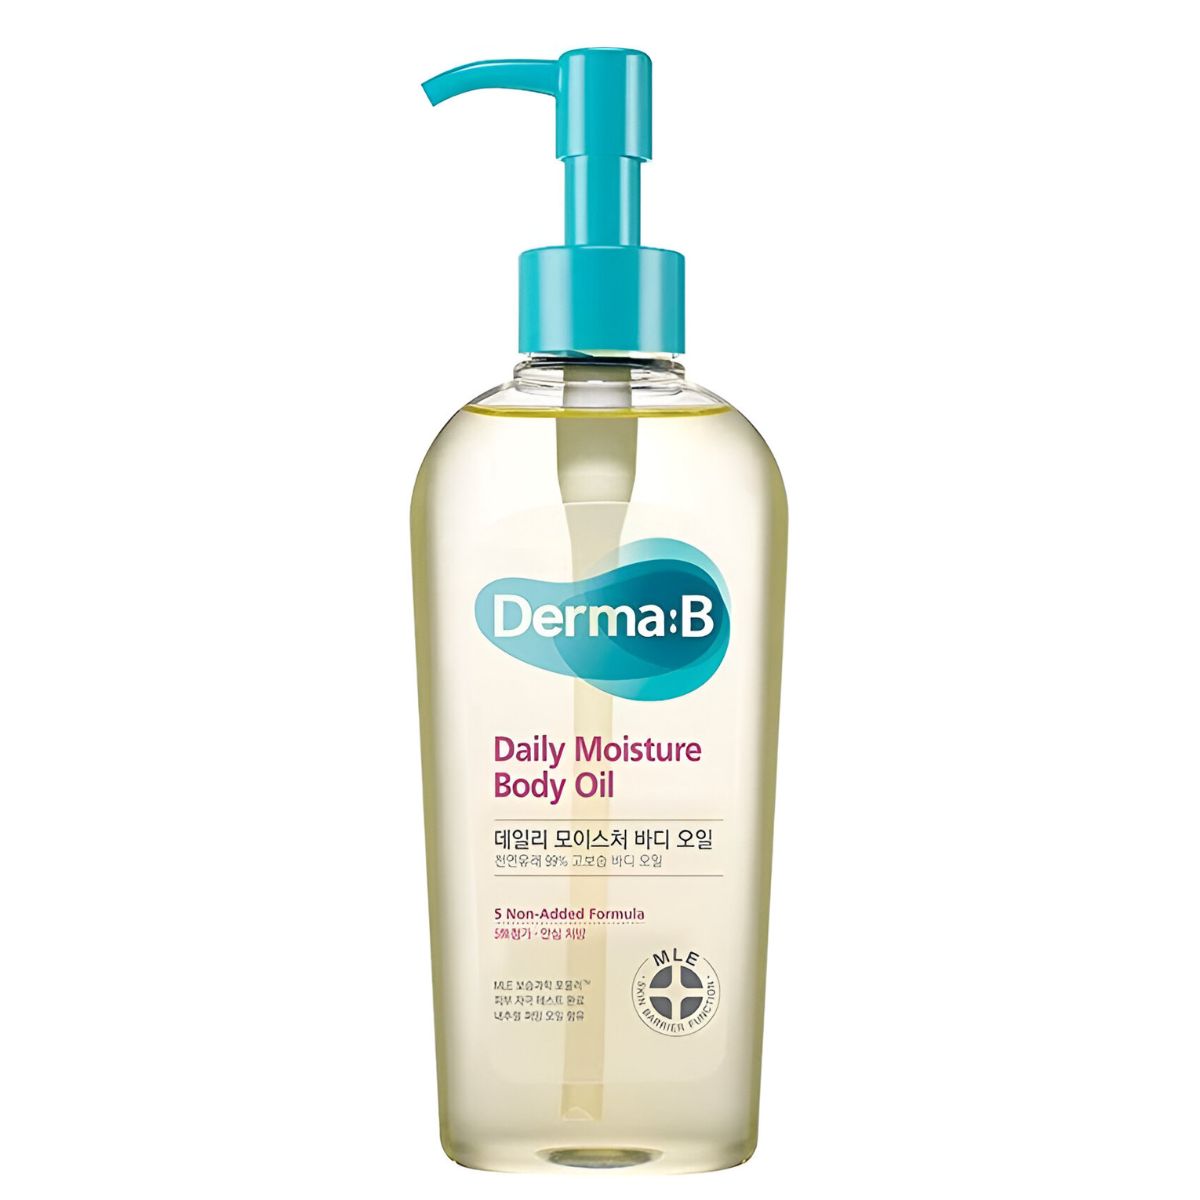 Ламеллярное парфюмированное масло для тела Derma:B Daily Moisture Body Oil arriviste парфюмированное масло для тела mango groove 50